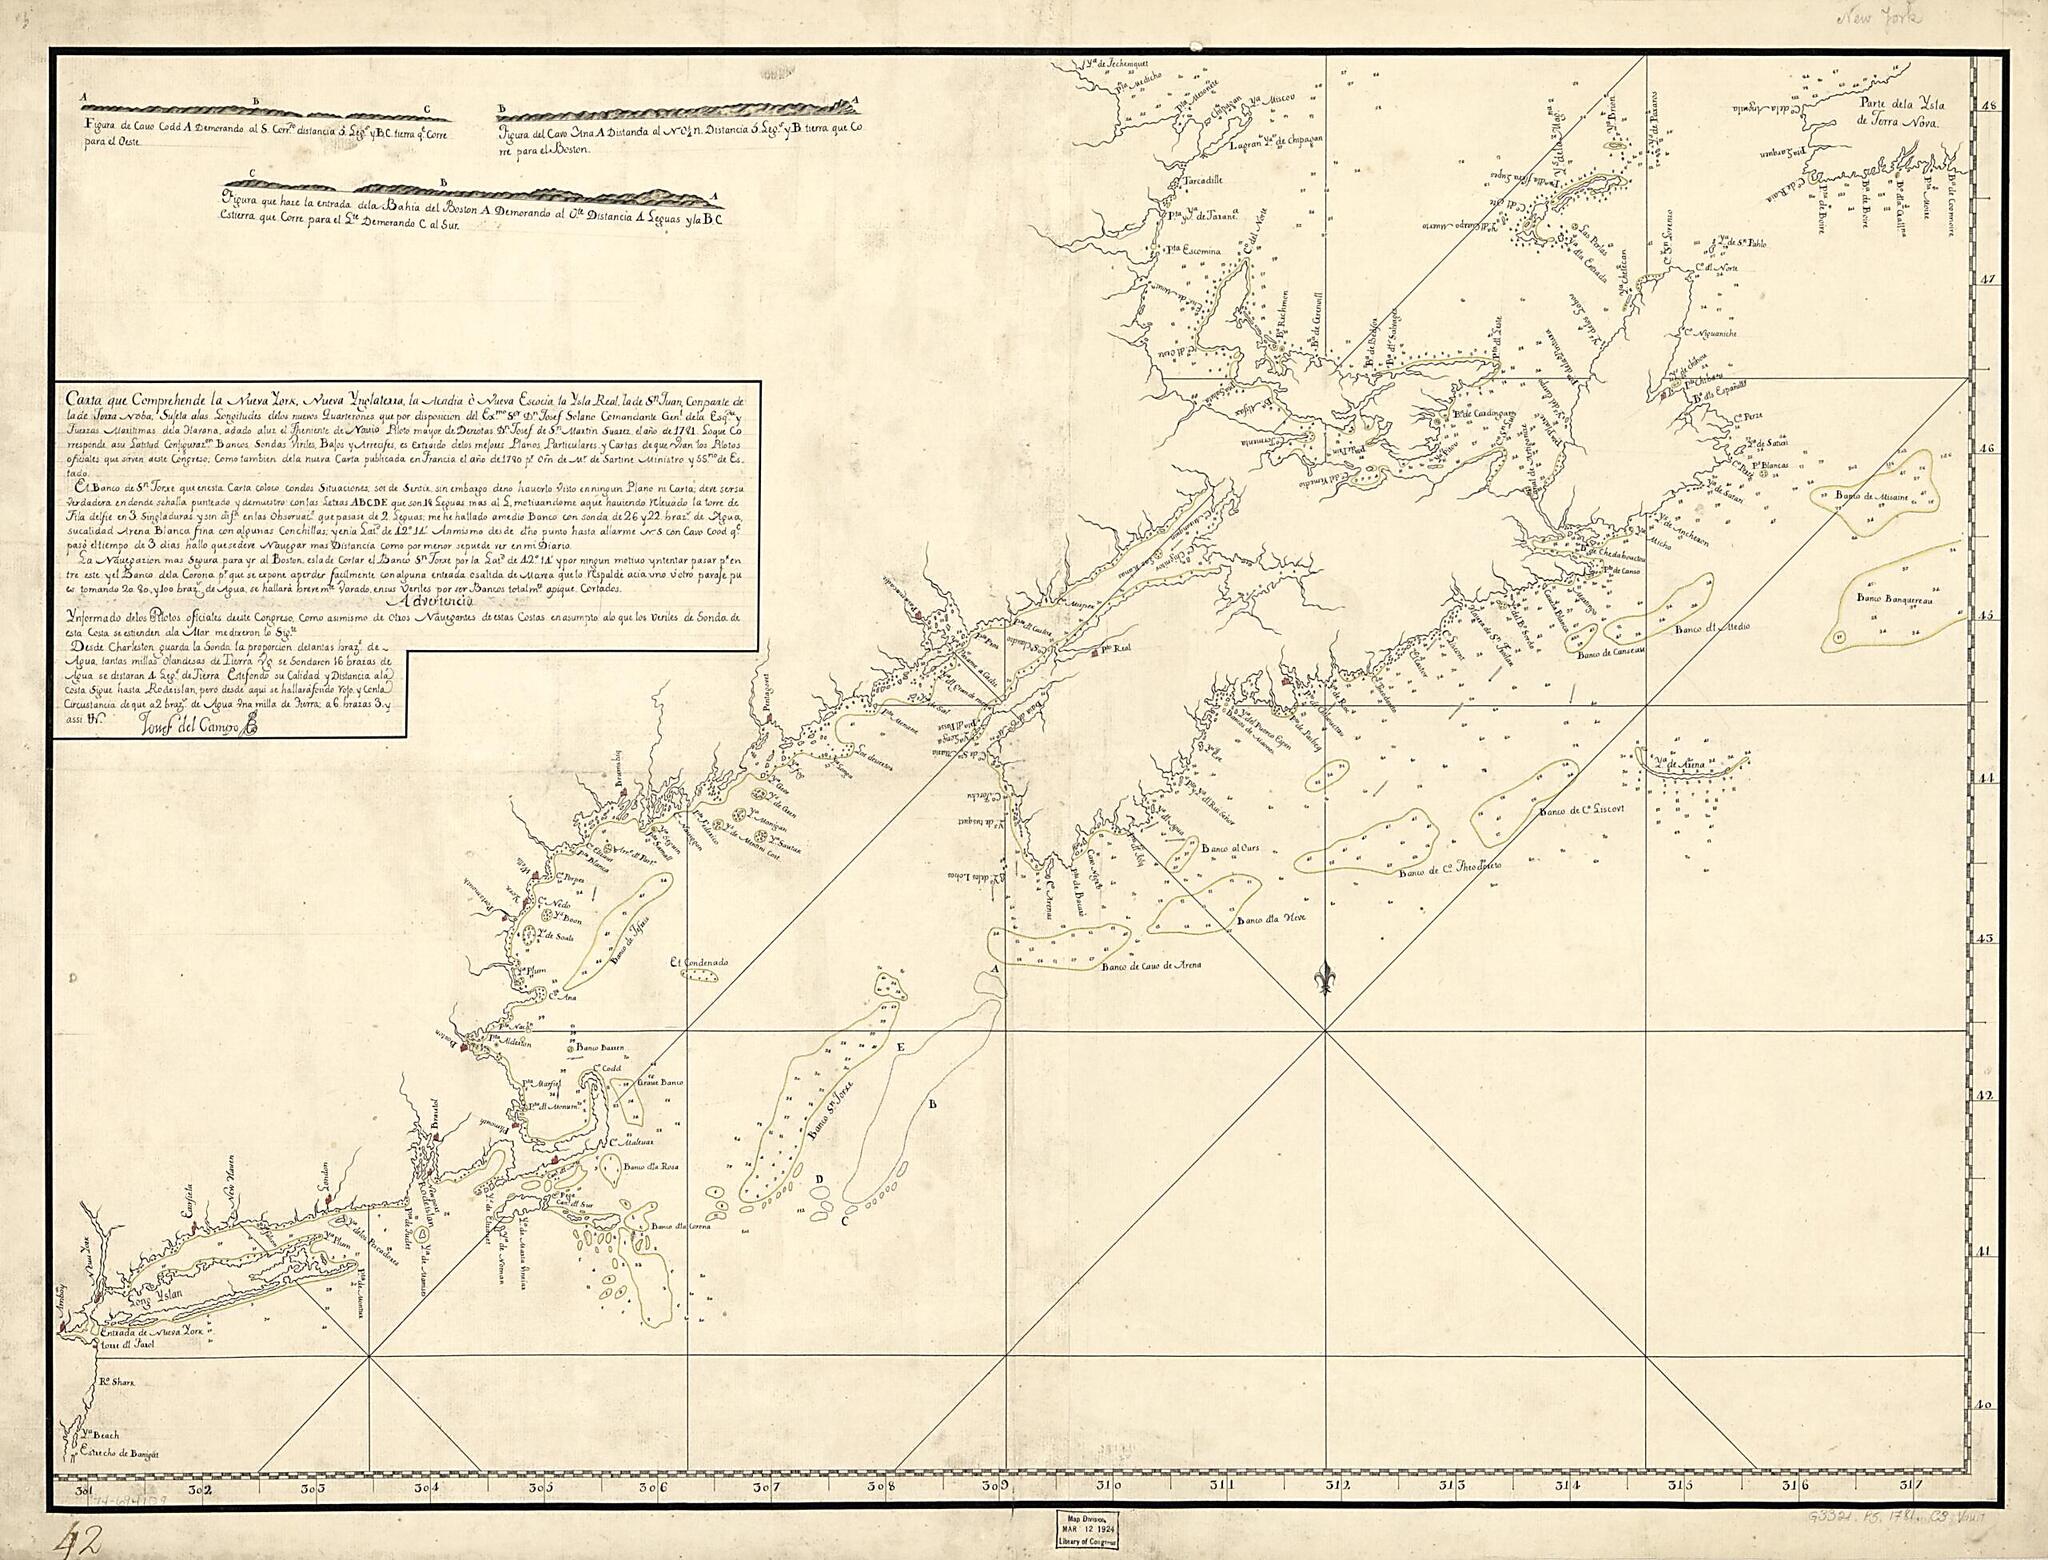 This old map of Carta Que Comprehende La Neuva York, Nueva Ynglaterra, La Acadia ò Neuva Escocia La Ysla Real, La De Sn. Juan, Con Parte De La De Terra Noba:  from 1781 was created by  in 1781